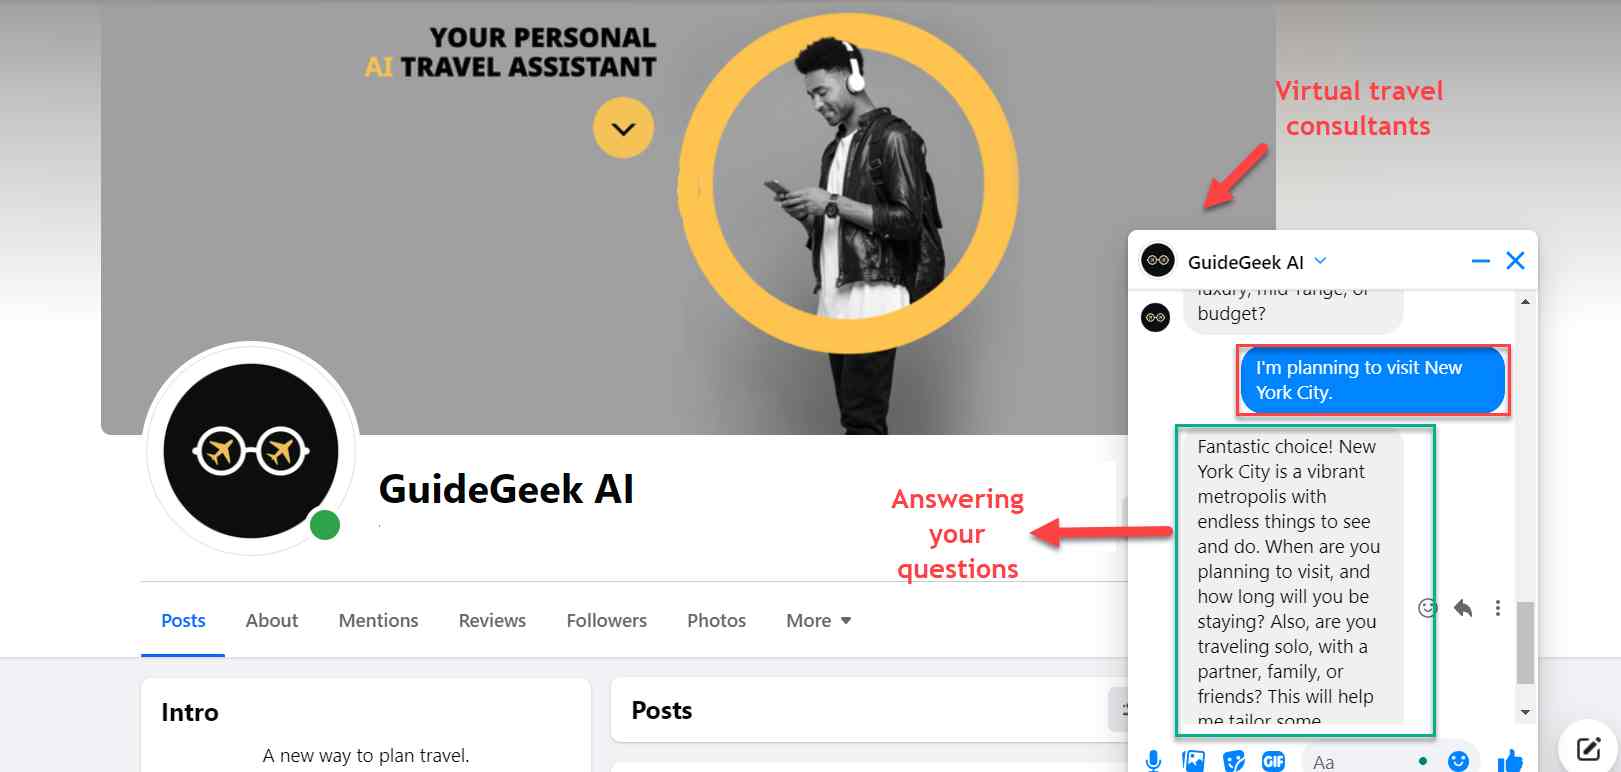  guidegeek-ai-chatbot-virtual-consultant-répondant aux questions en temps réel et fournissant des recommandations personnalisées. 